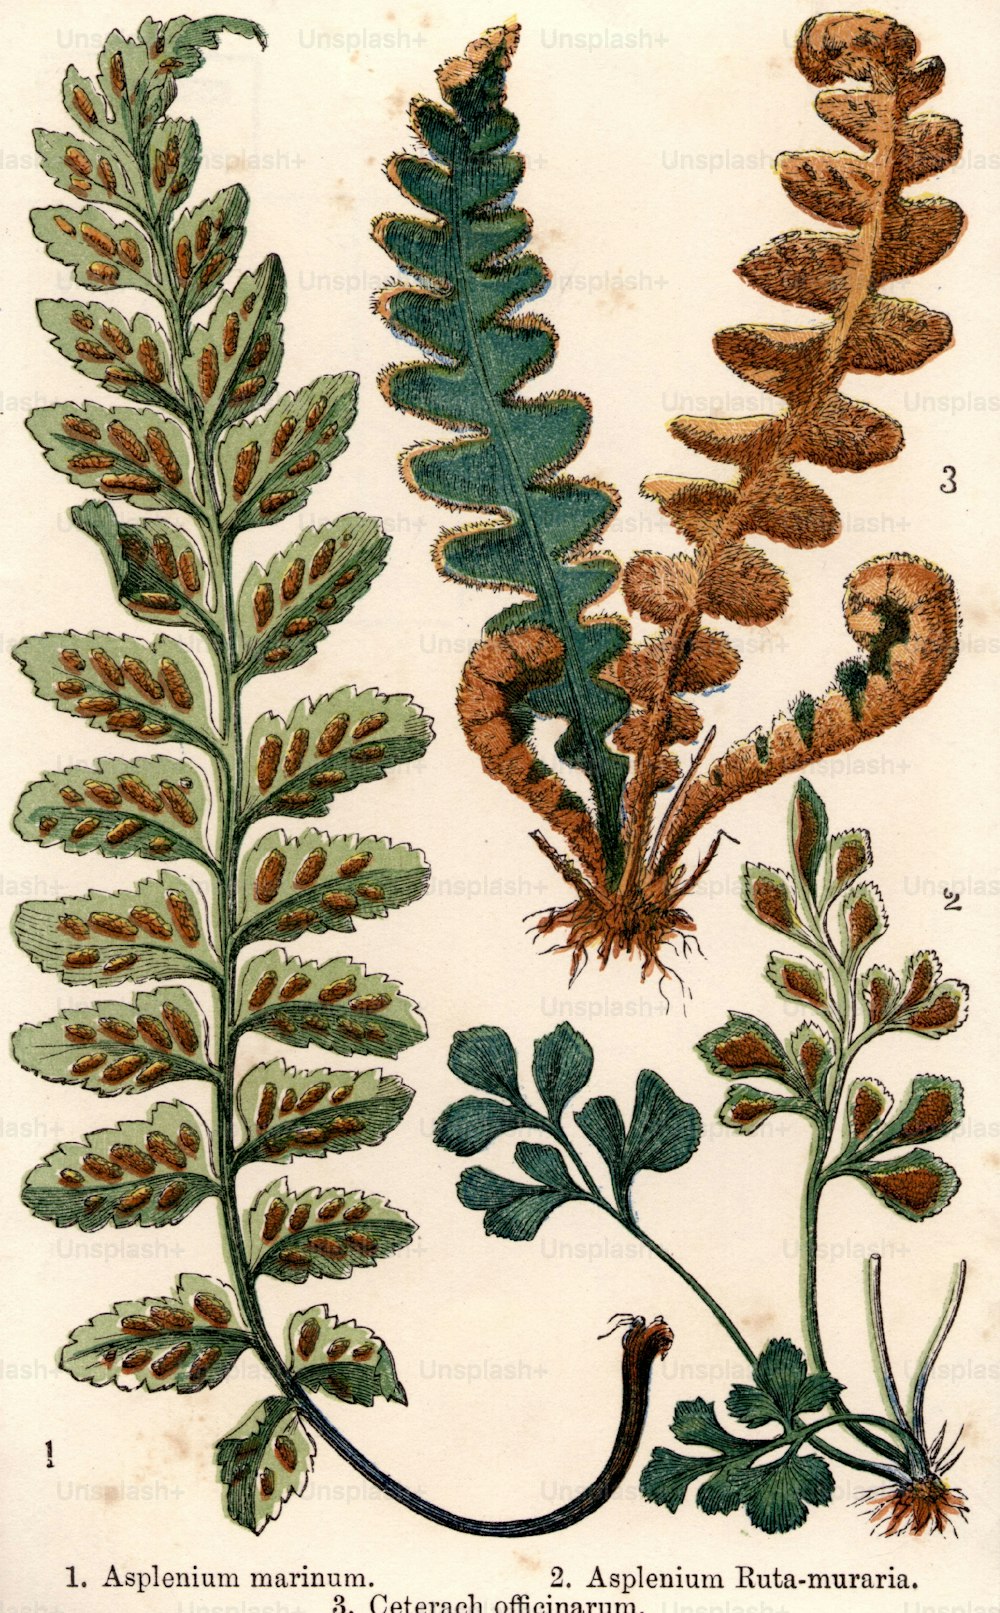 Hacia 1800: Tres especies de helechos, entre ellos Asplenium marinum, Asplenium ruta-muraria y Ceterach officinarum.  (Foto de Hulton Archive/Getty Images)